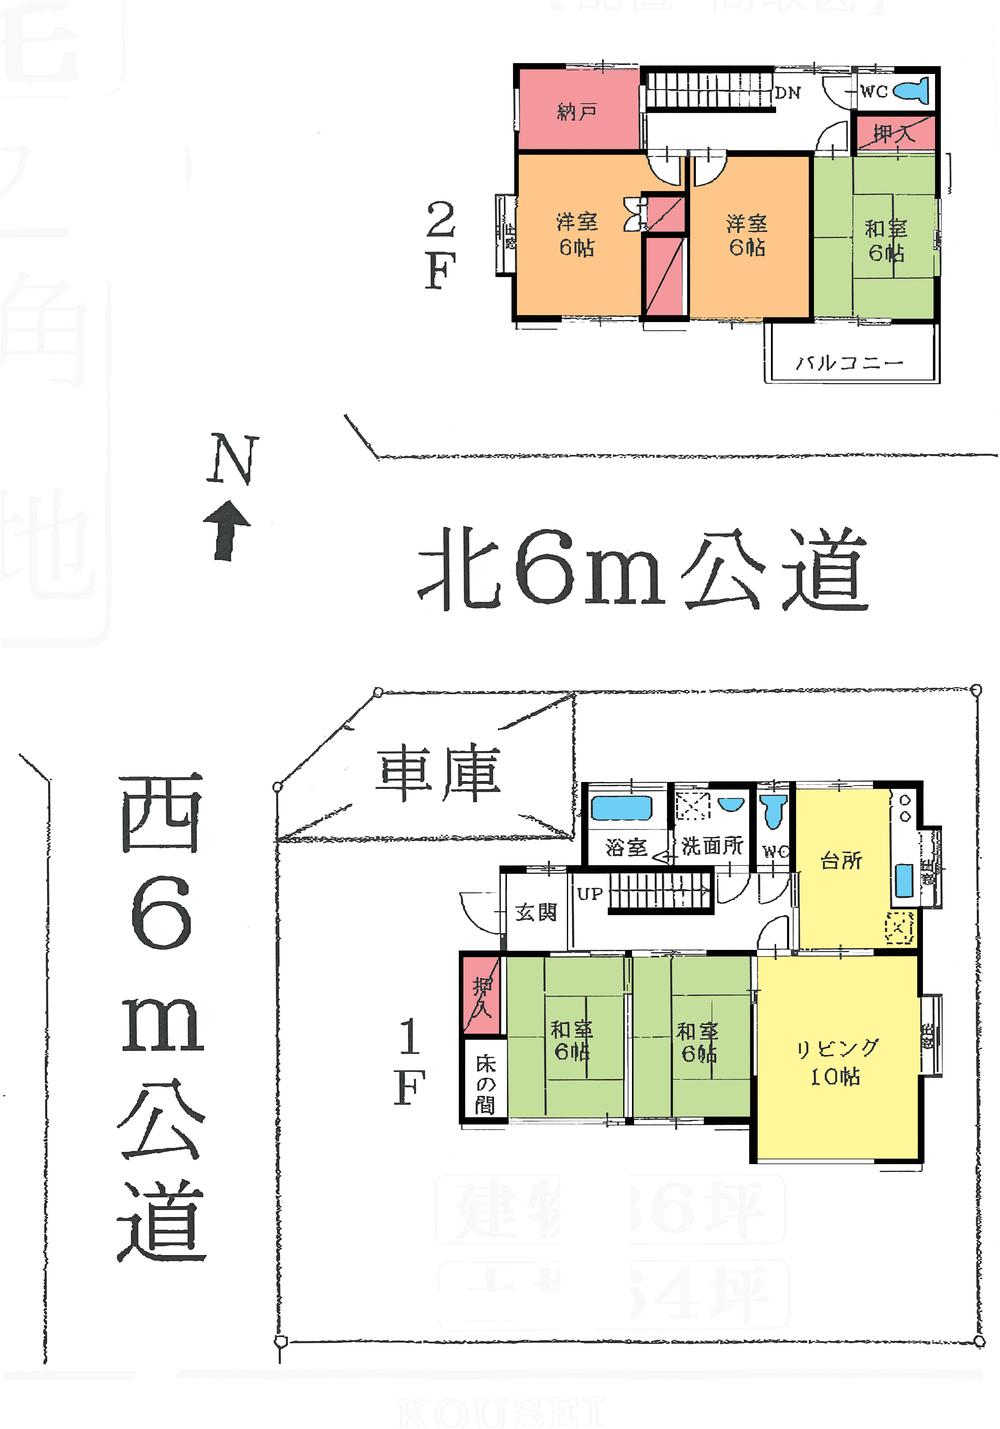 Floor plan. 17.8 million yen, 5LDK + S (storeroom), Land area 212.75 sq m , Building area 119.24 sq m floor plan